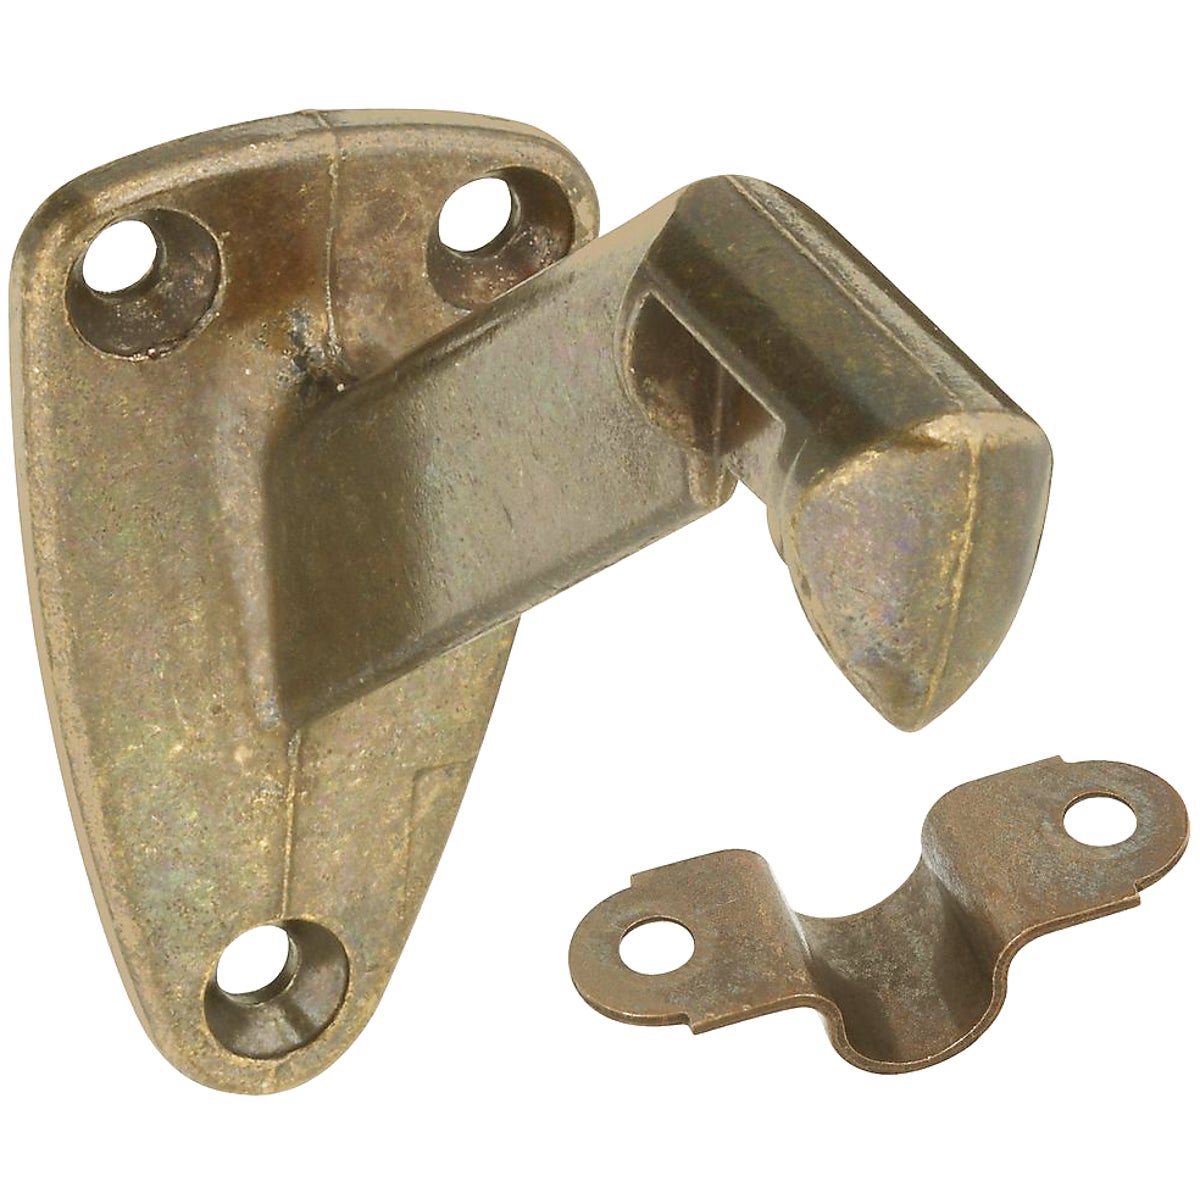 National Antique Brass Zinc Die-Cast With Steel Strap Handrail Bracket